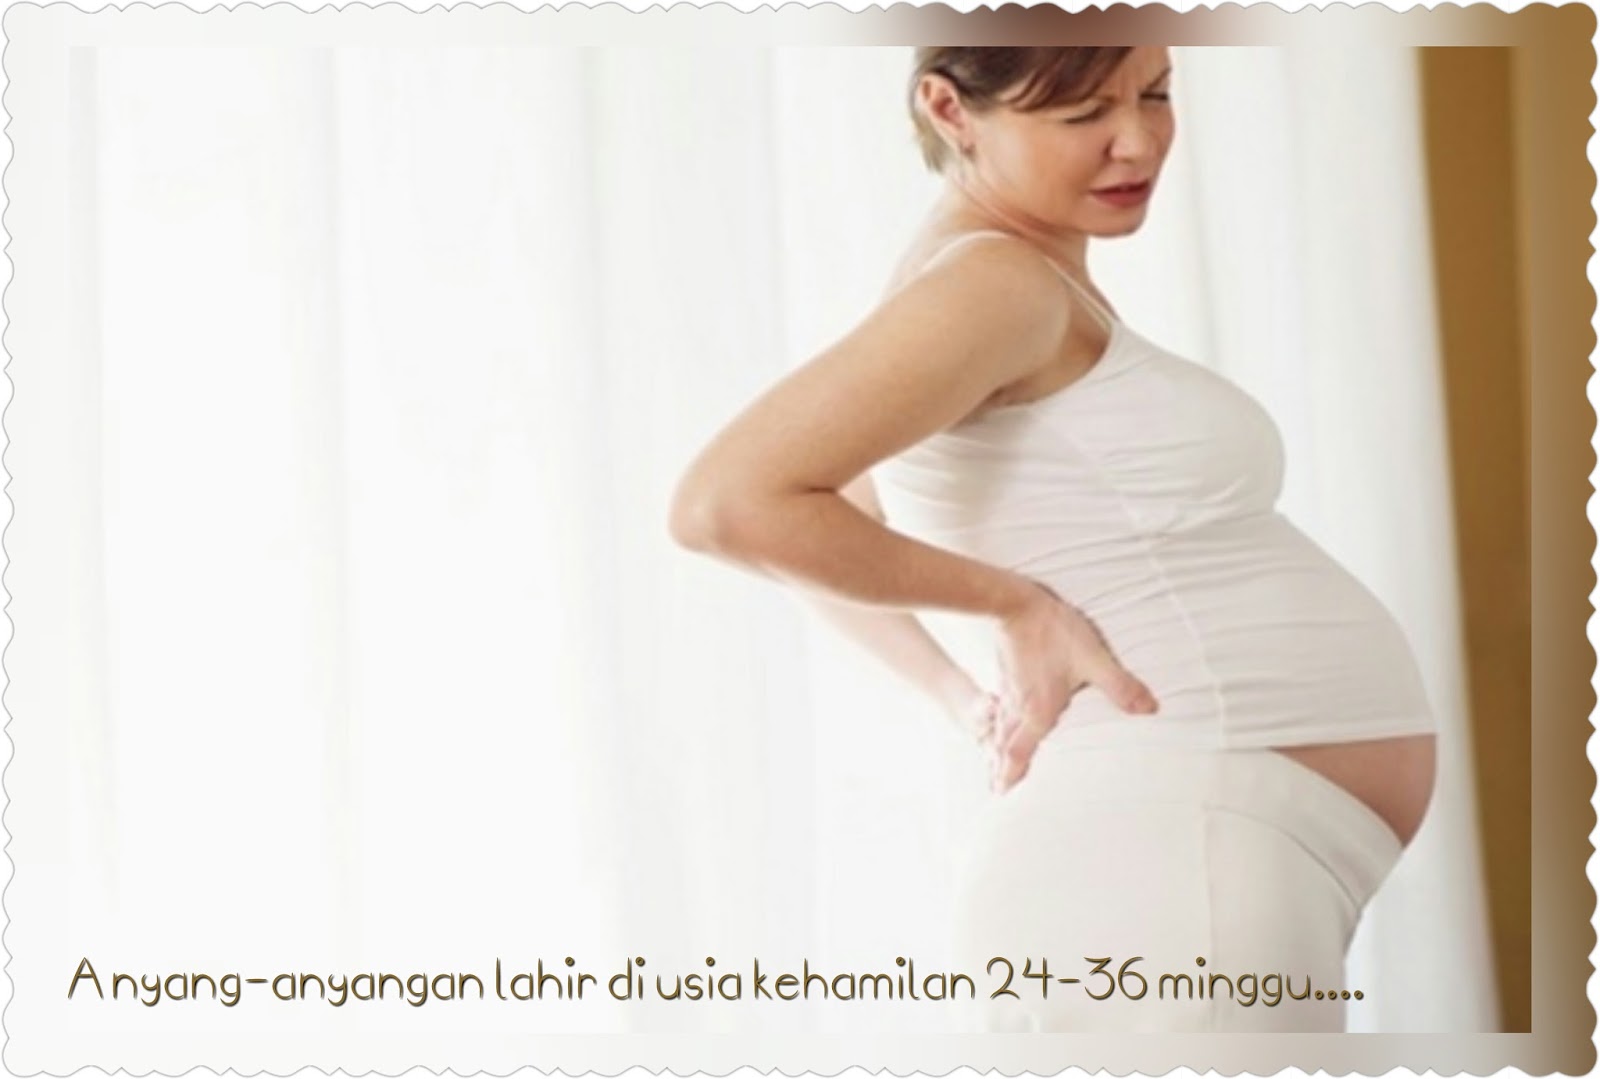 7 недель беременности болит живот